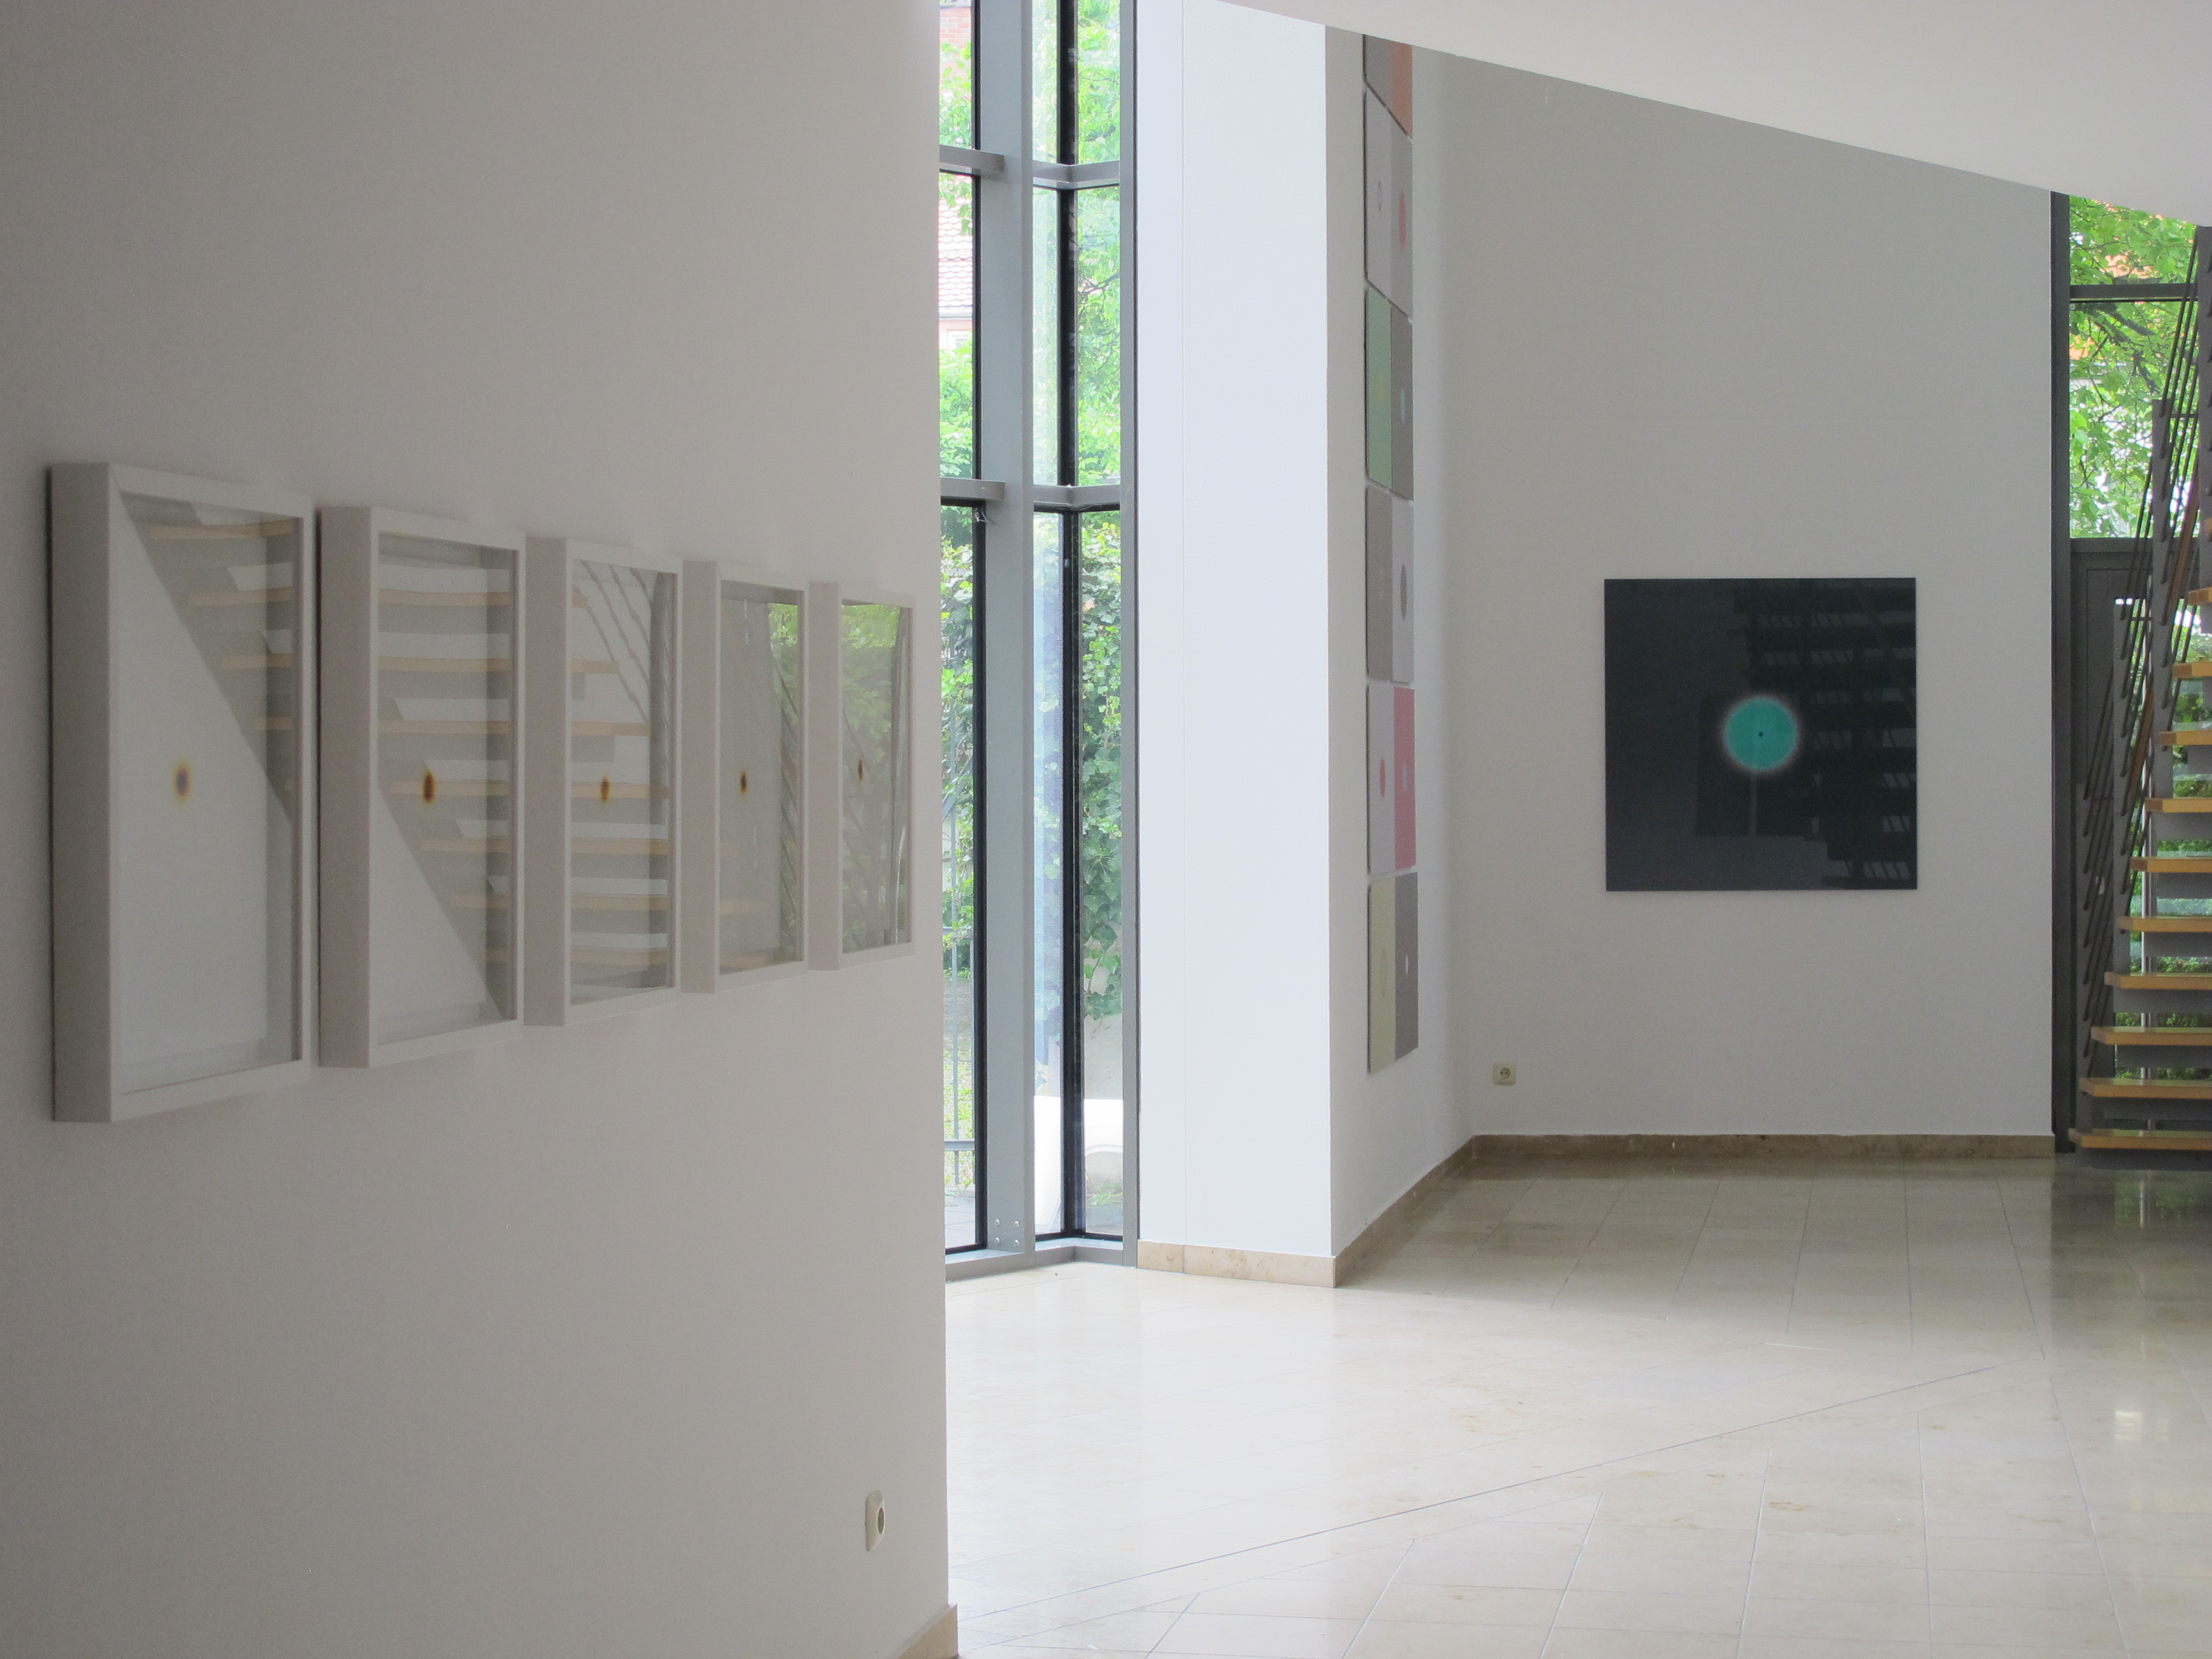 Installation view at Kunstverein Augsburg, 2012